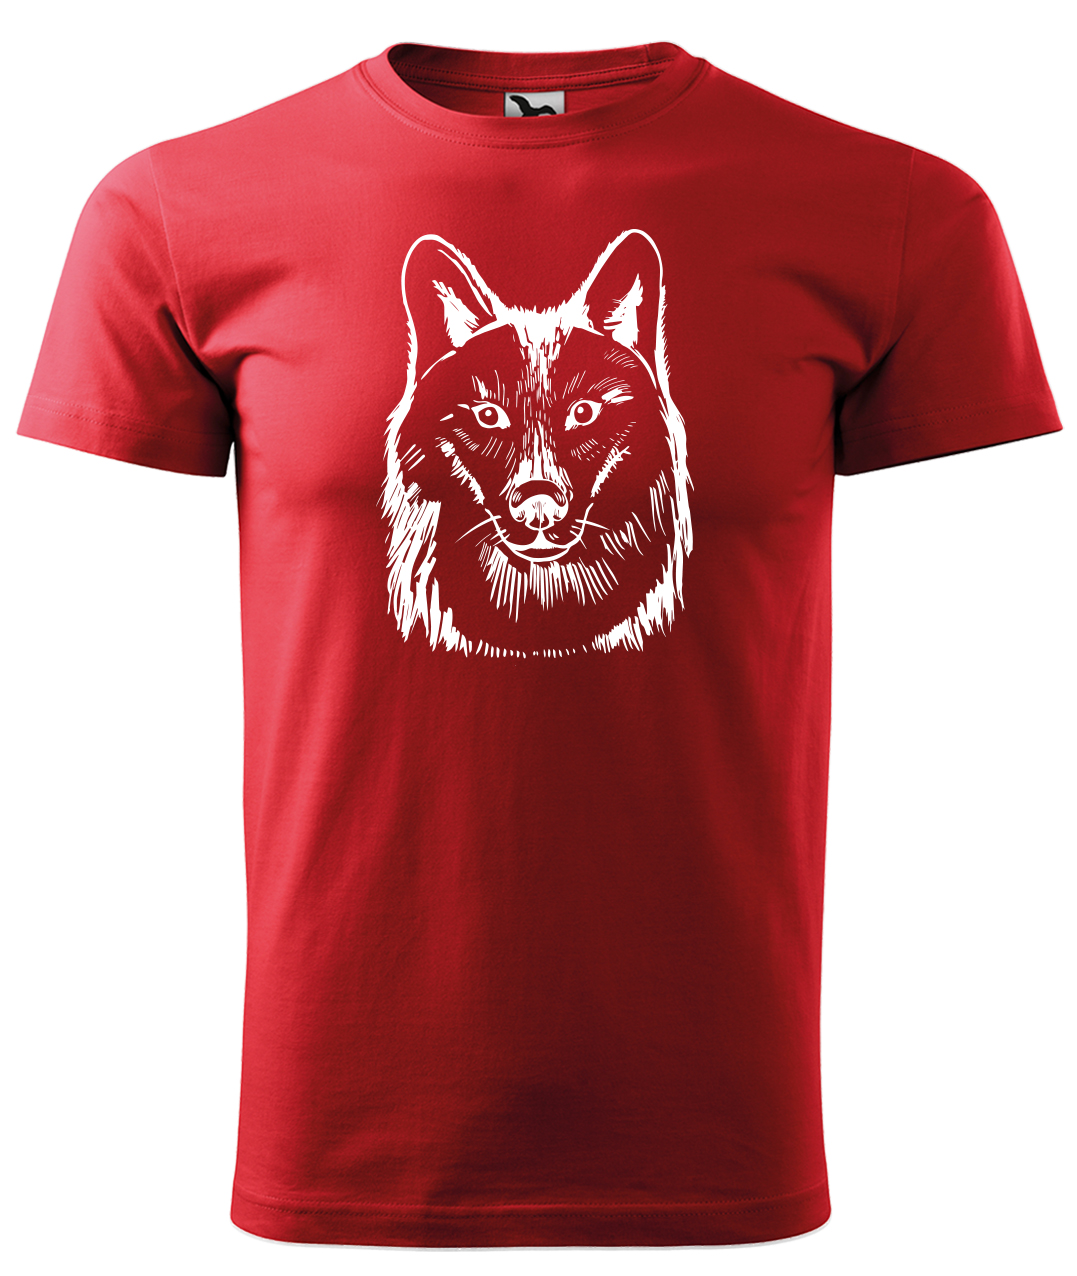 Dětské tričko s vlkem - Kresba vlka Velikost: 10 let / 146 cm, Barva: Červená (07), Délka rukávu: Krátký rukáv